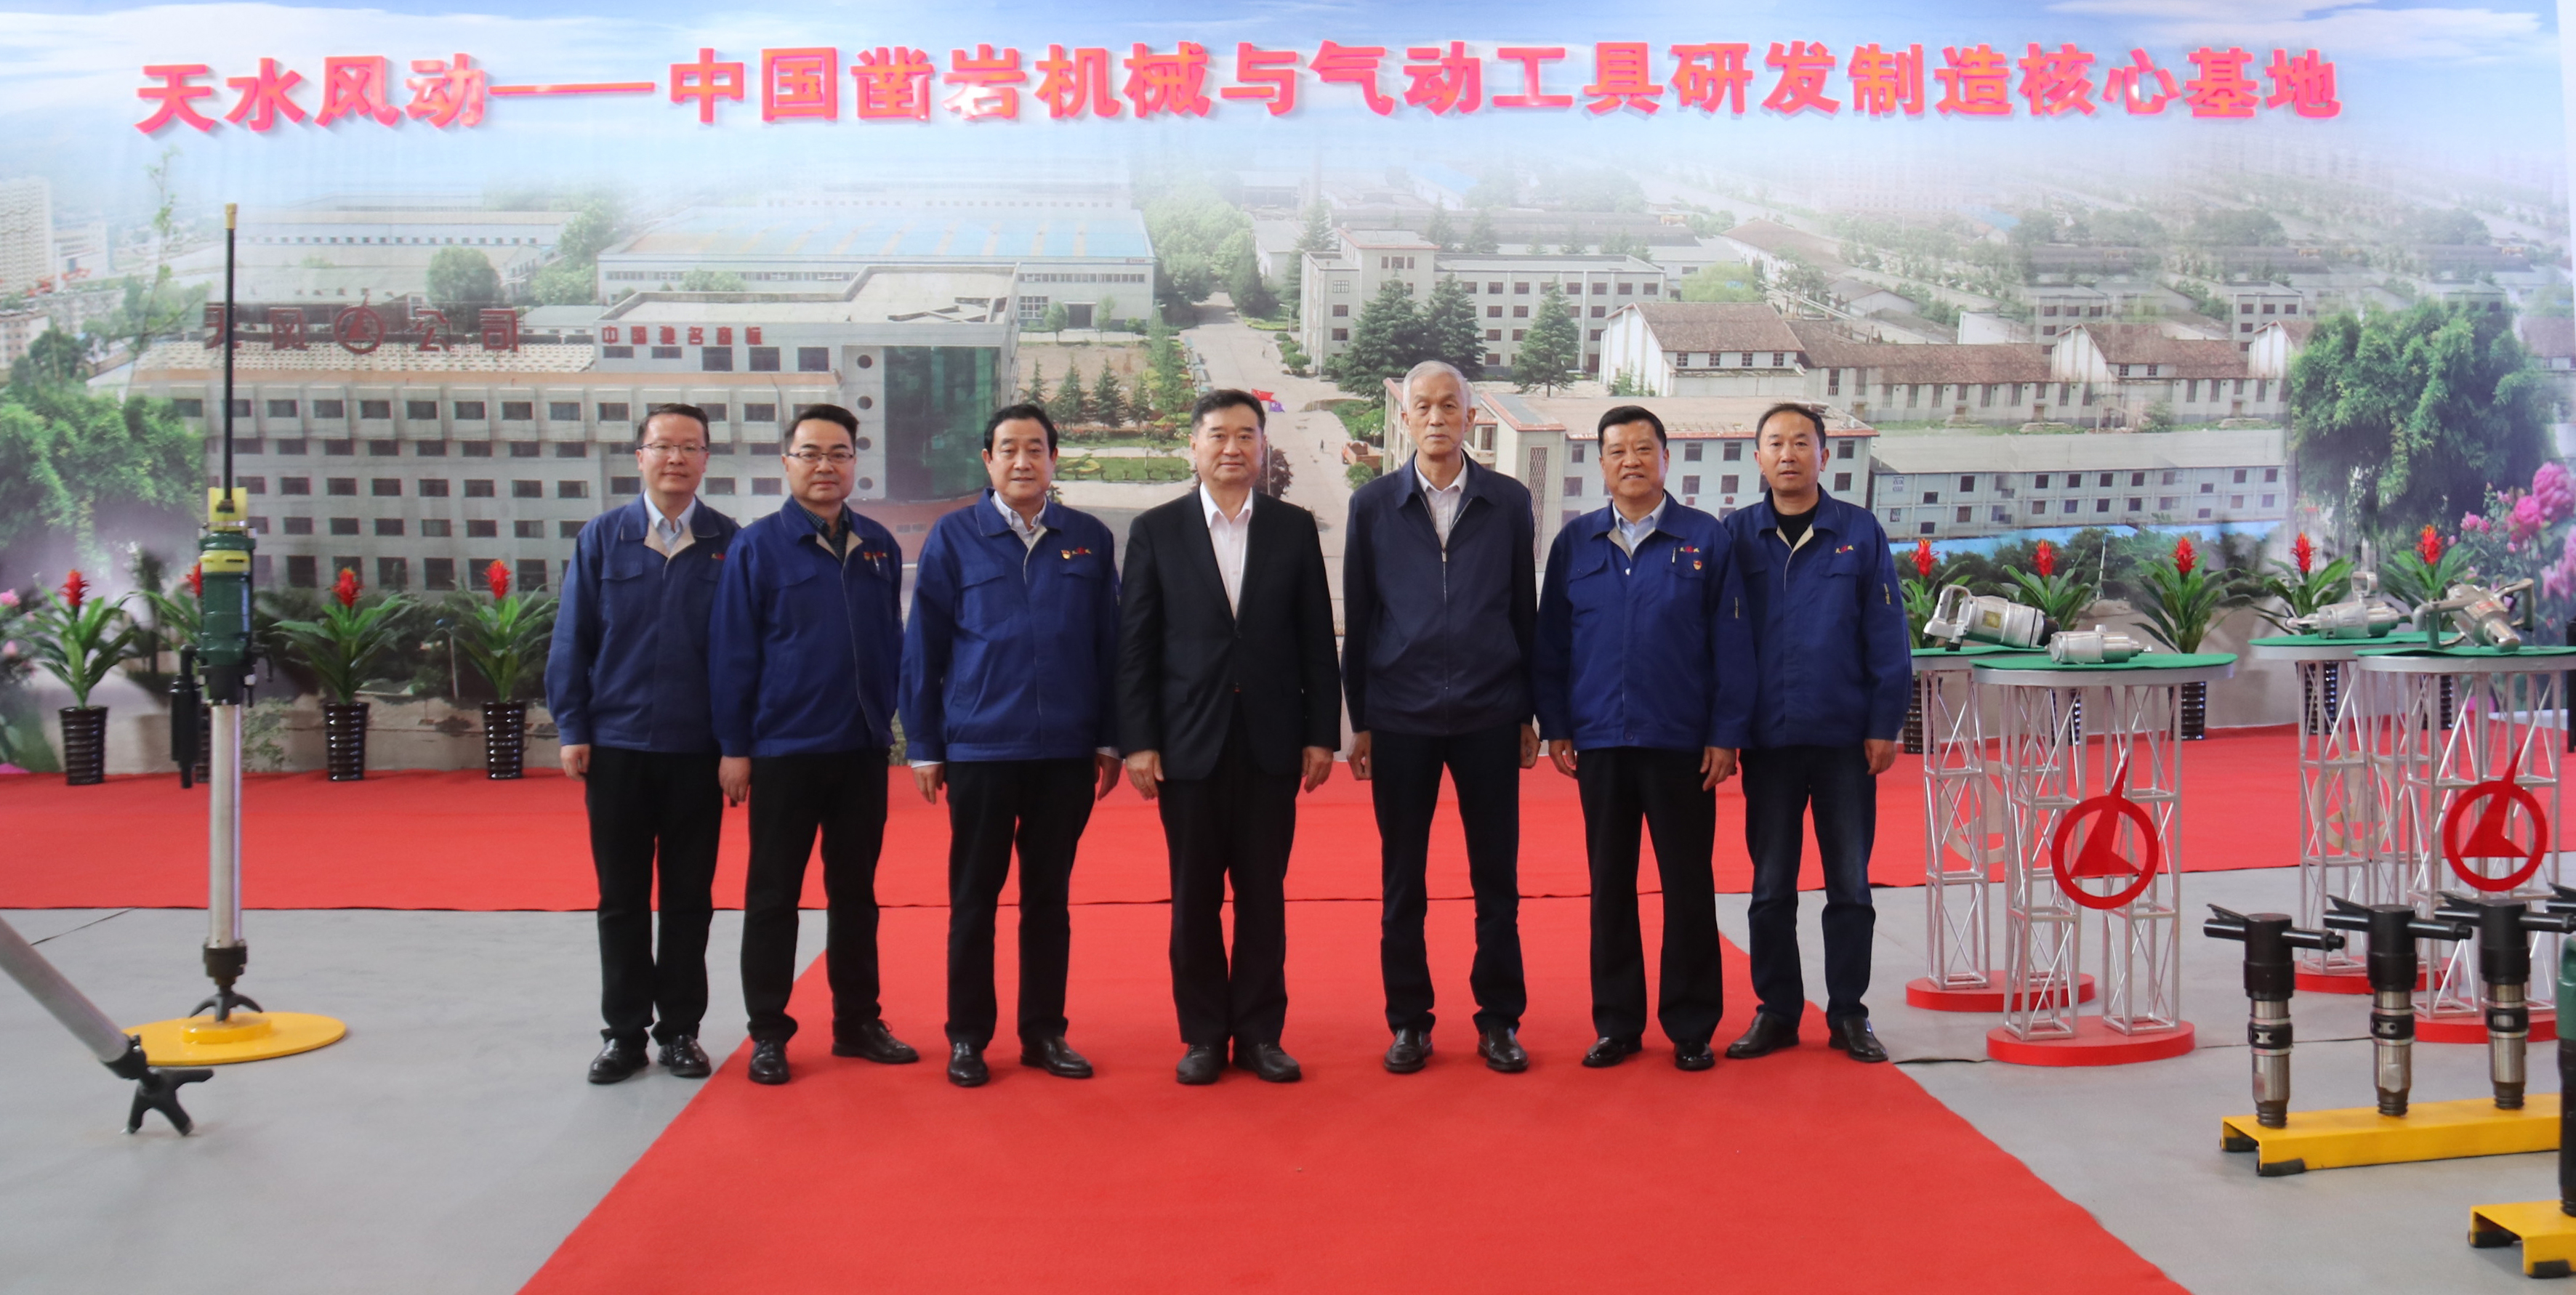 中国工程机械工业协会会长 苏子孟莅临公司参观考察